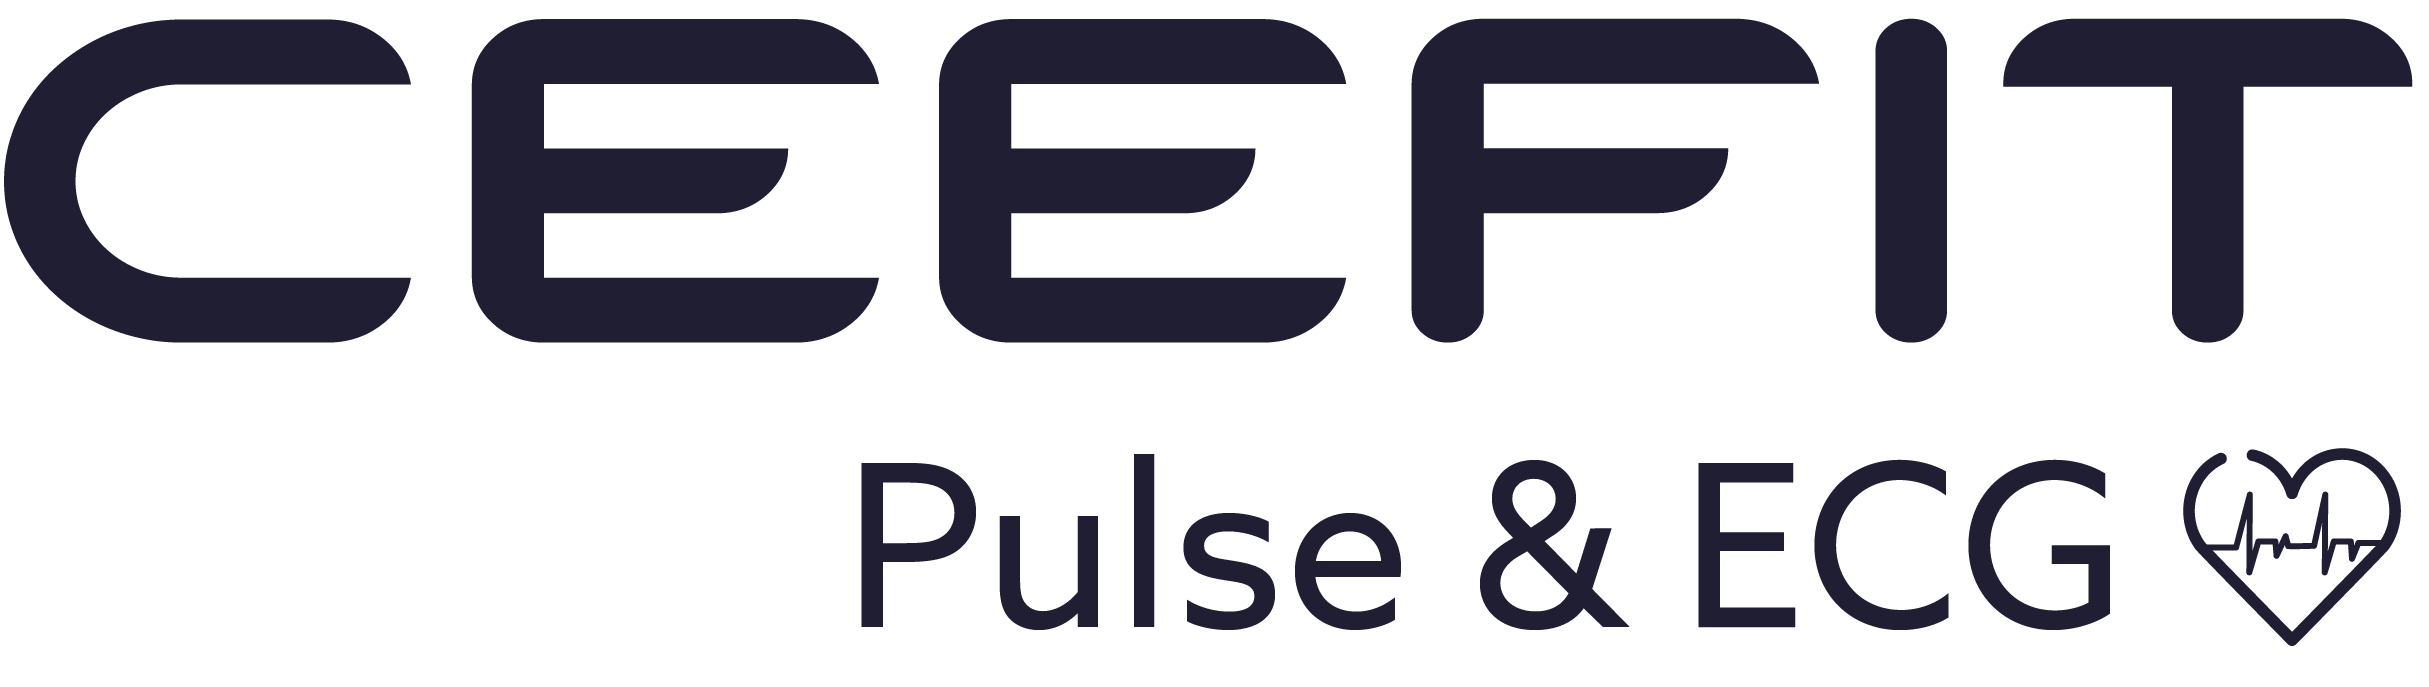 Ceefit-pulse